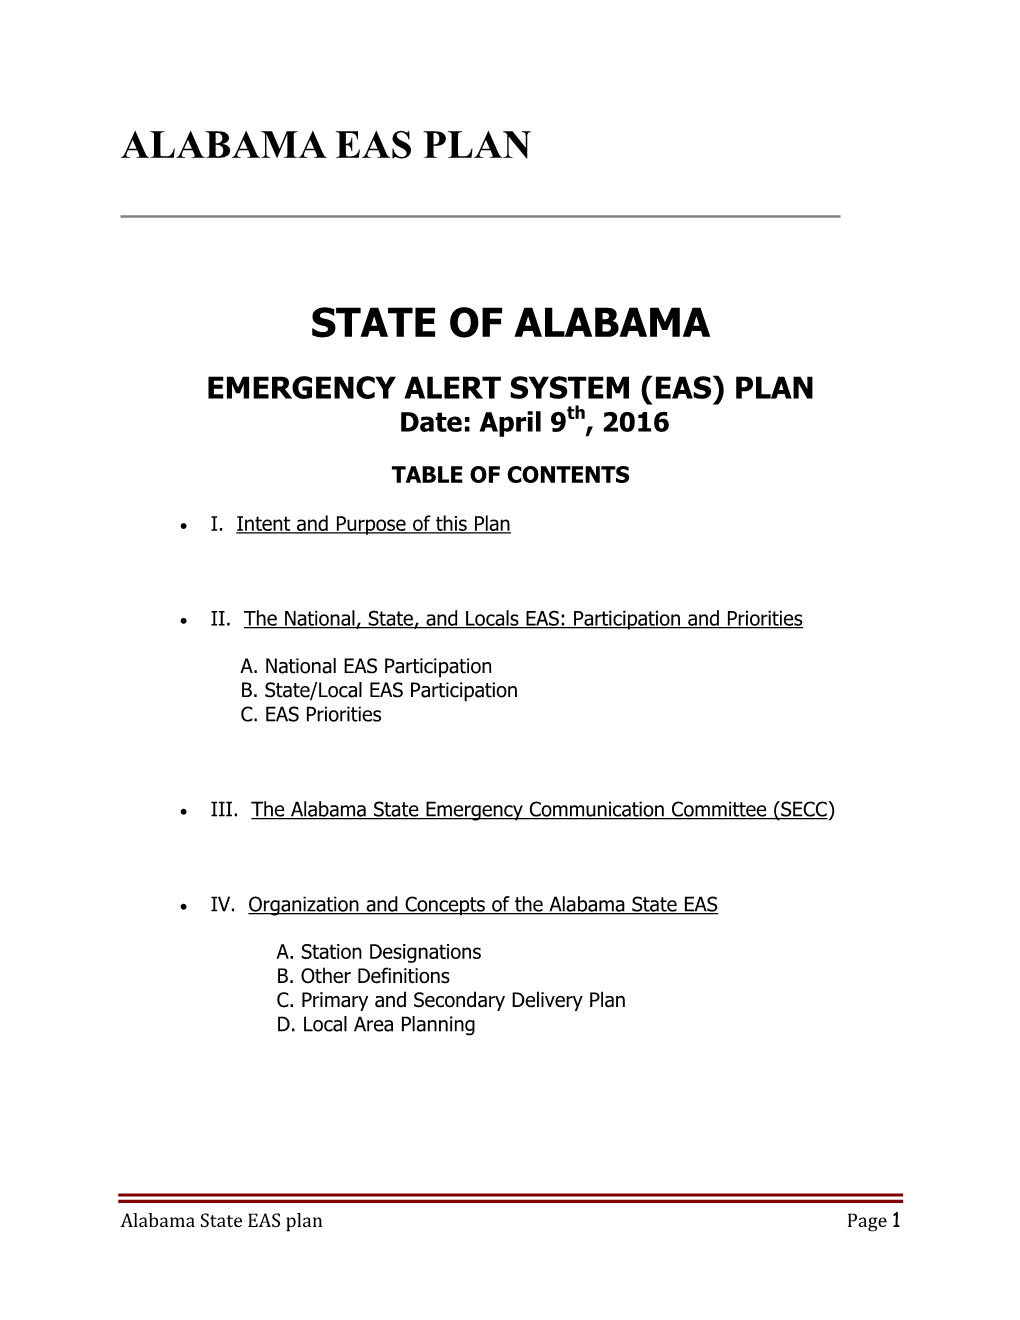 Alabama Eas Plan State of Alabama